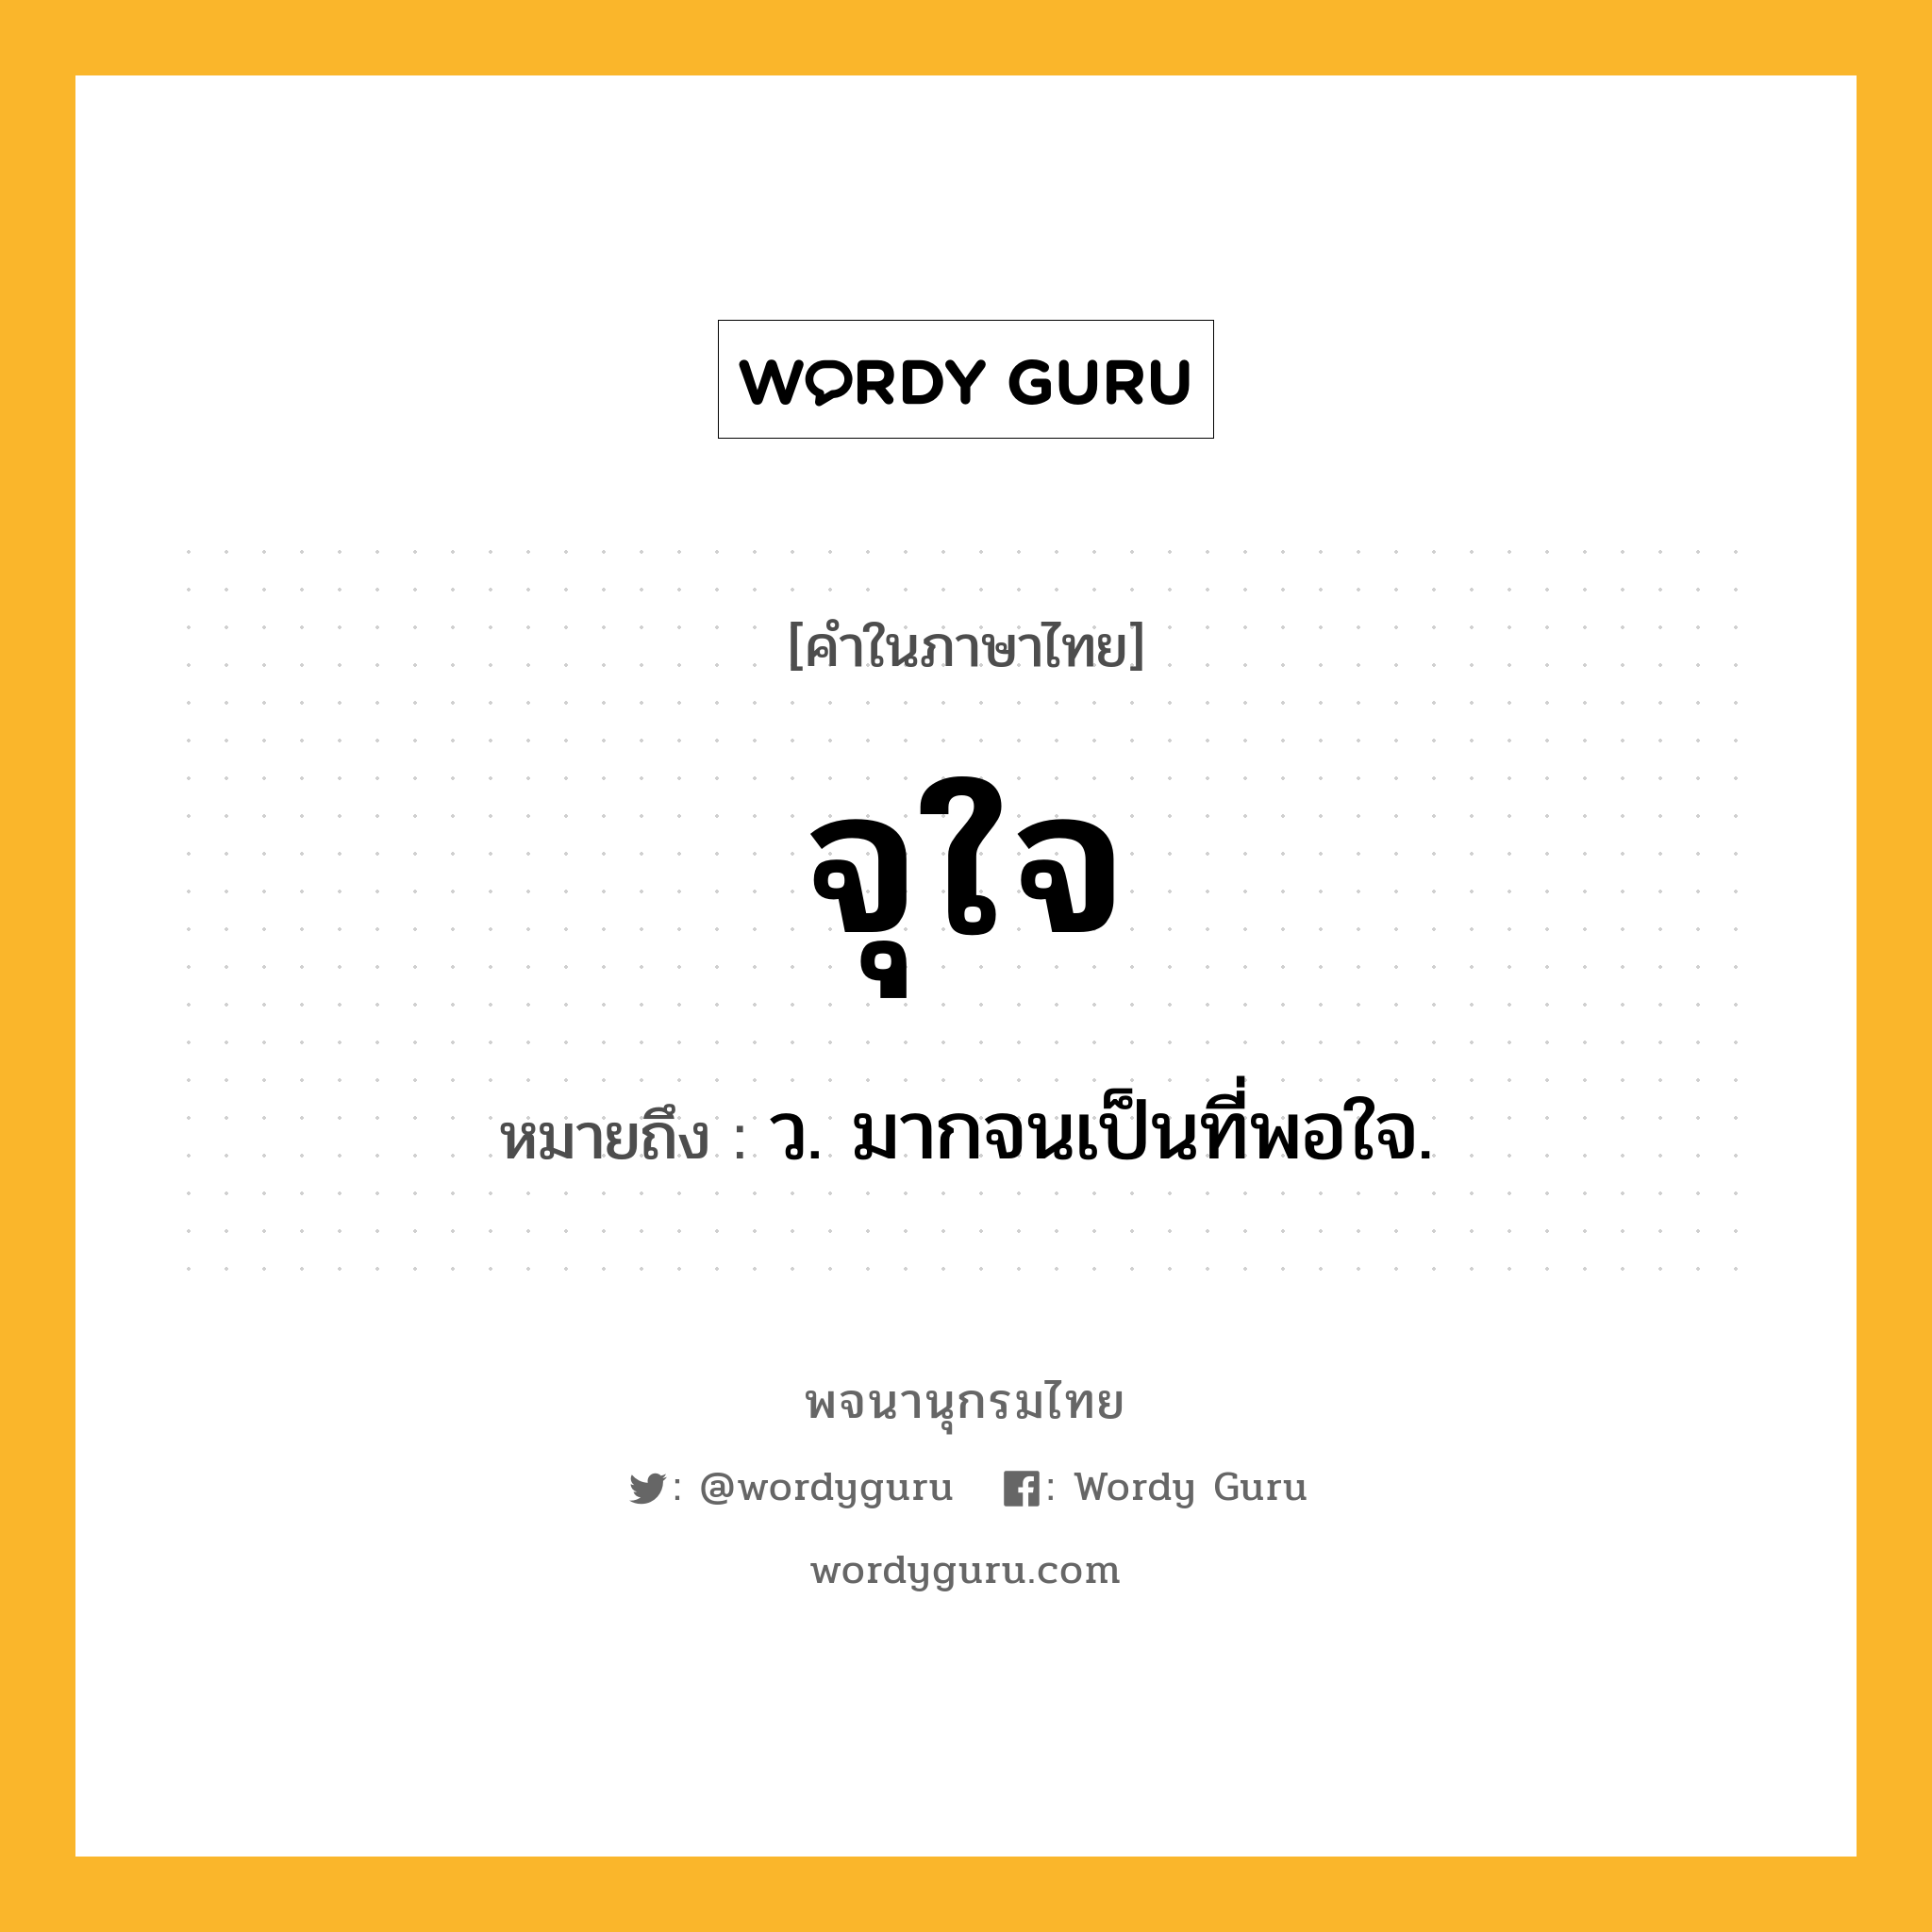 จุใจ ความหมาย หมายถึงอะไร?, คำในภาษาไทย จุใจ หมายถึง ว. มากจนเป็นที่พอใจ.